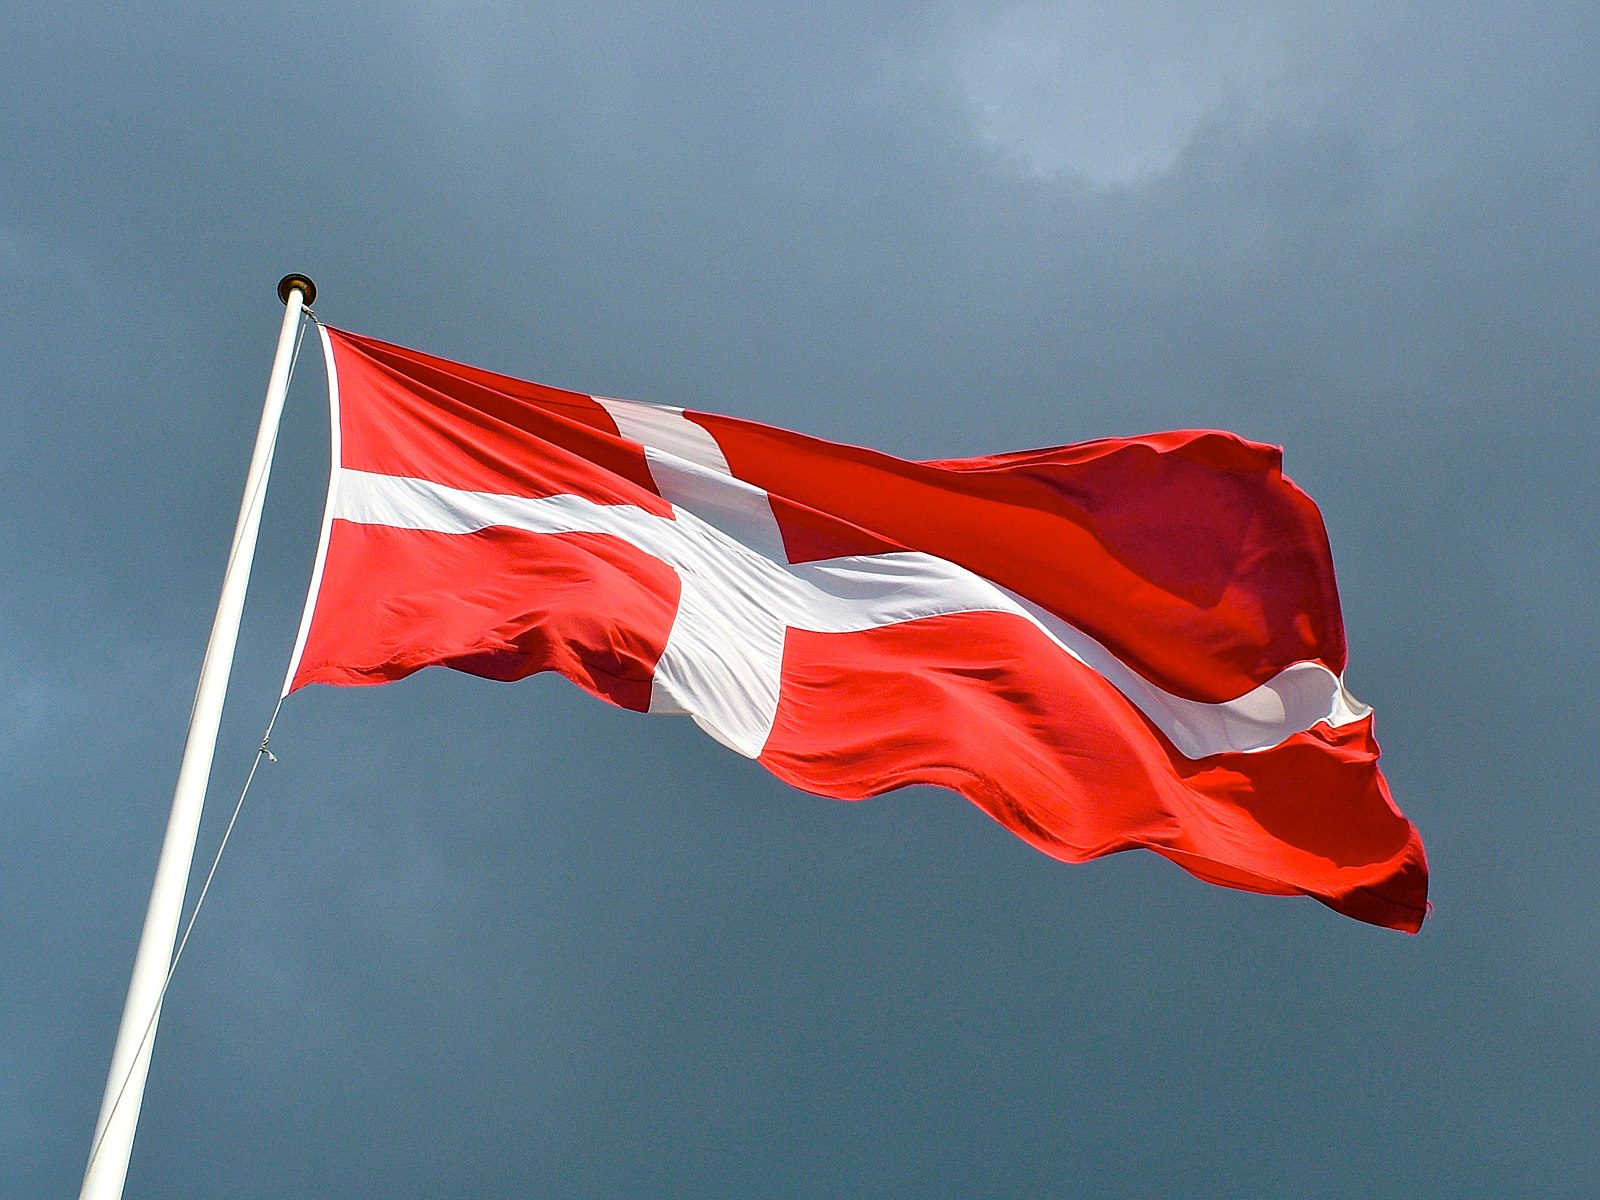 Dänemark – Der außenpolitische Wandel infolge der Migration